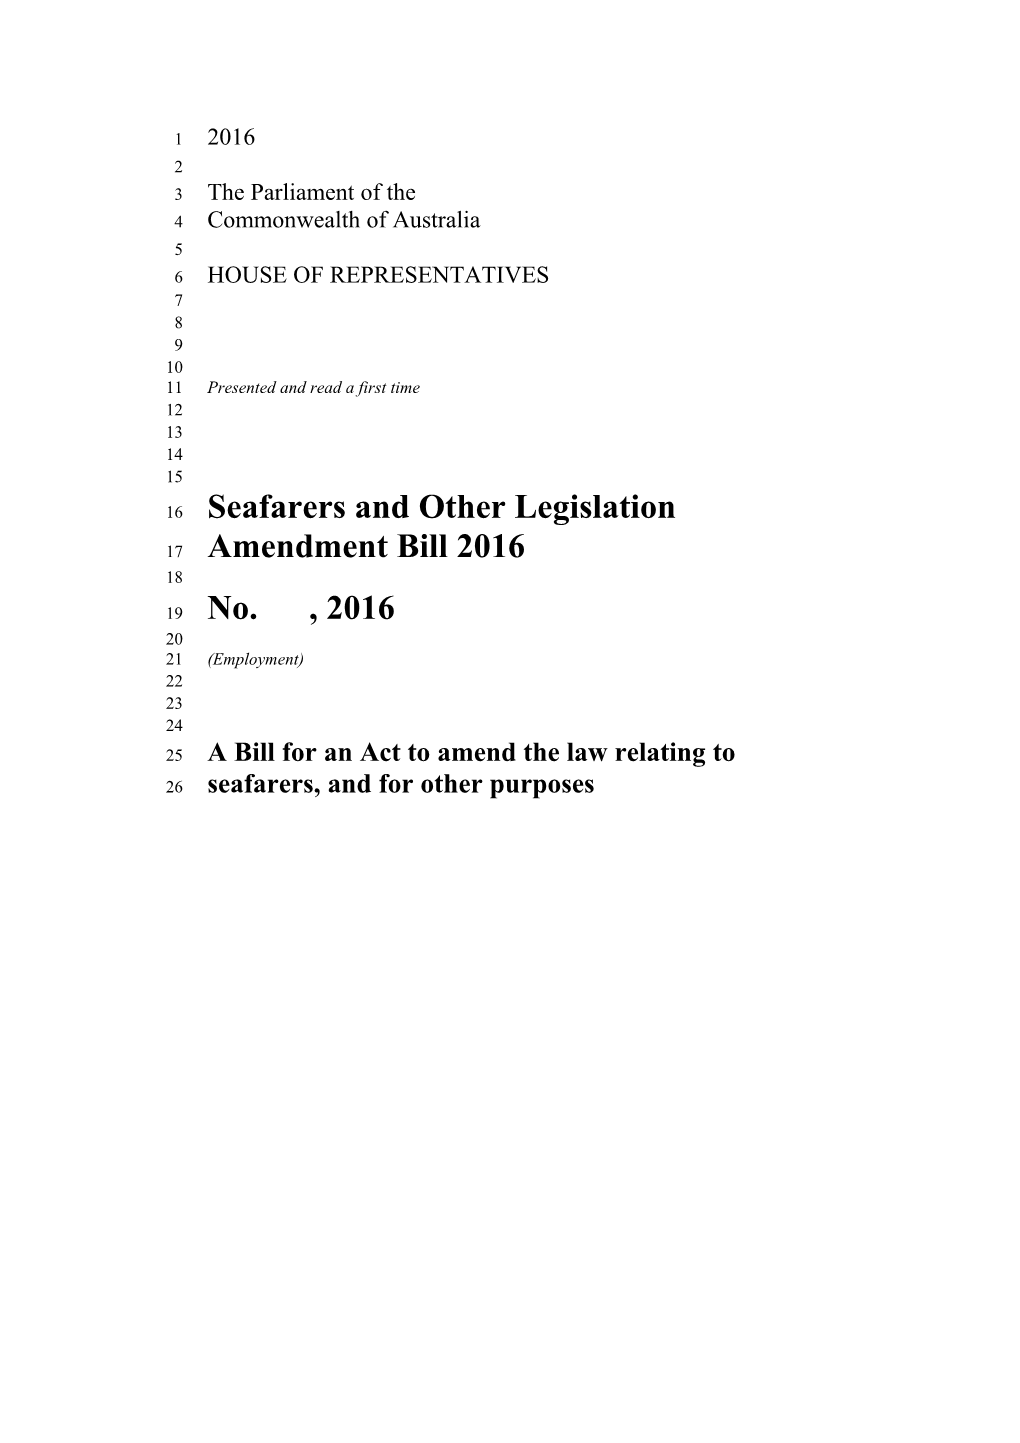 Seafarers and Other Legislation Amendment Bill 2016